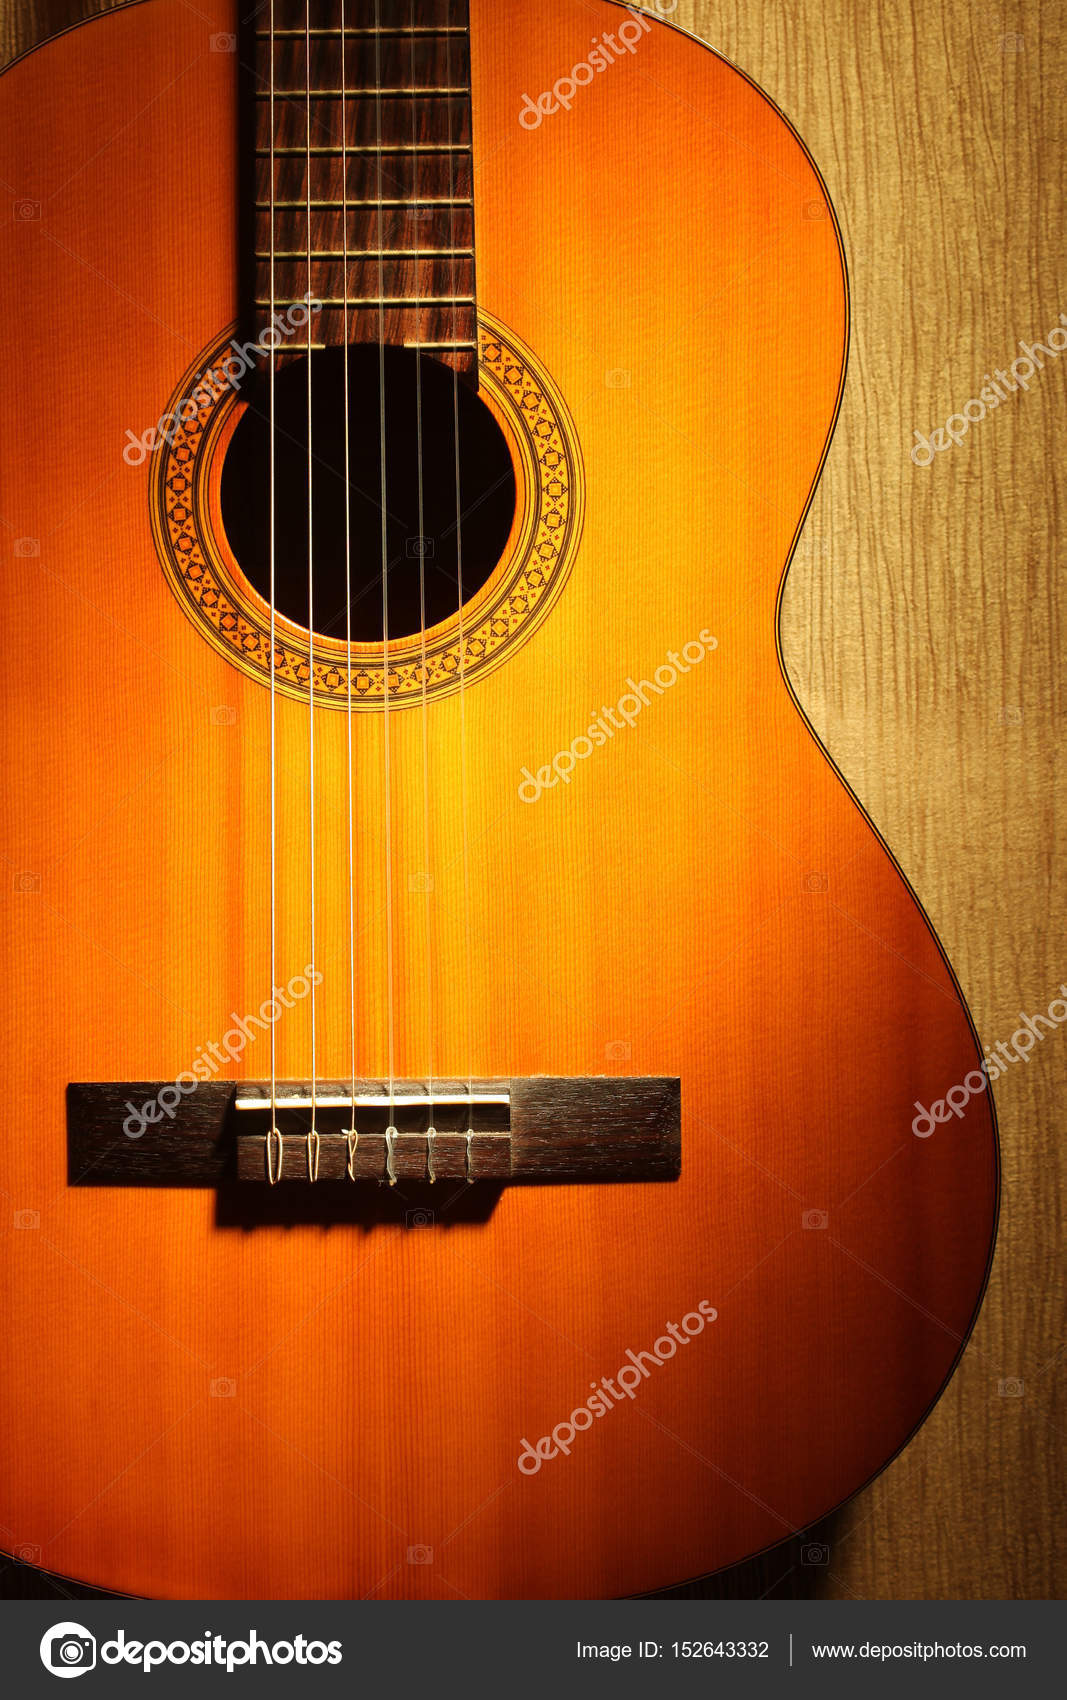 76 Gambar Orang Gitar Akustik Paling Bagus